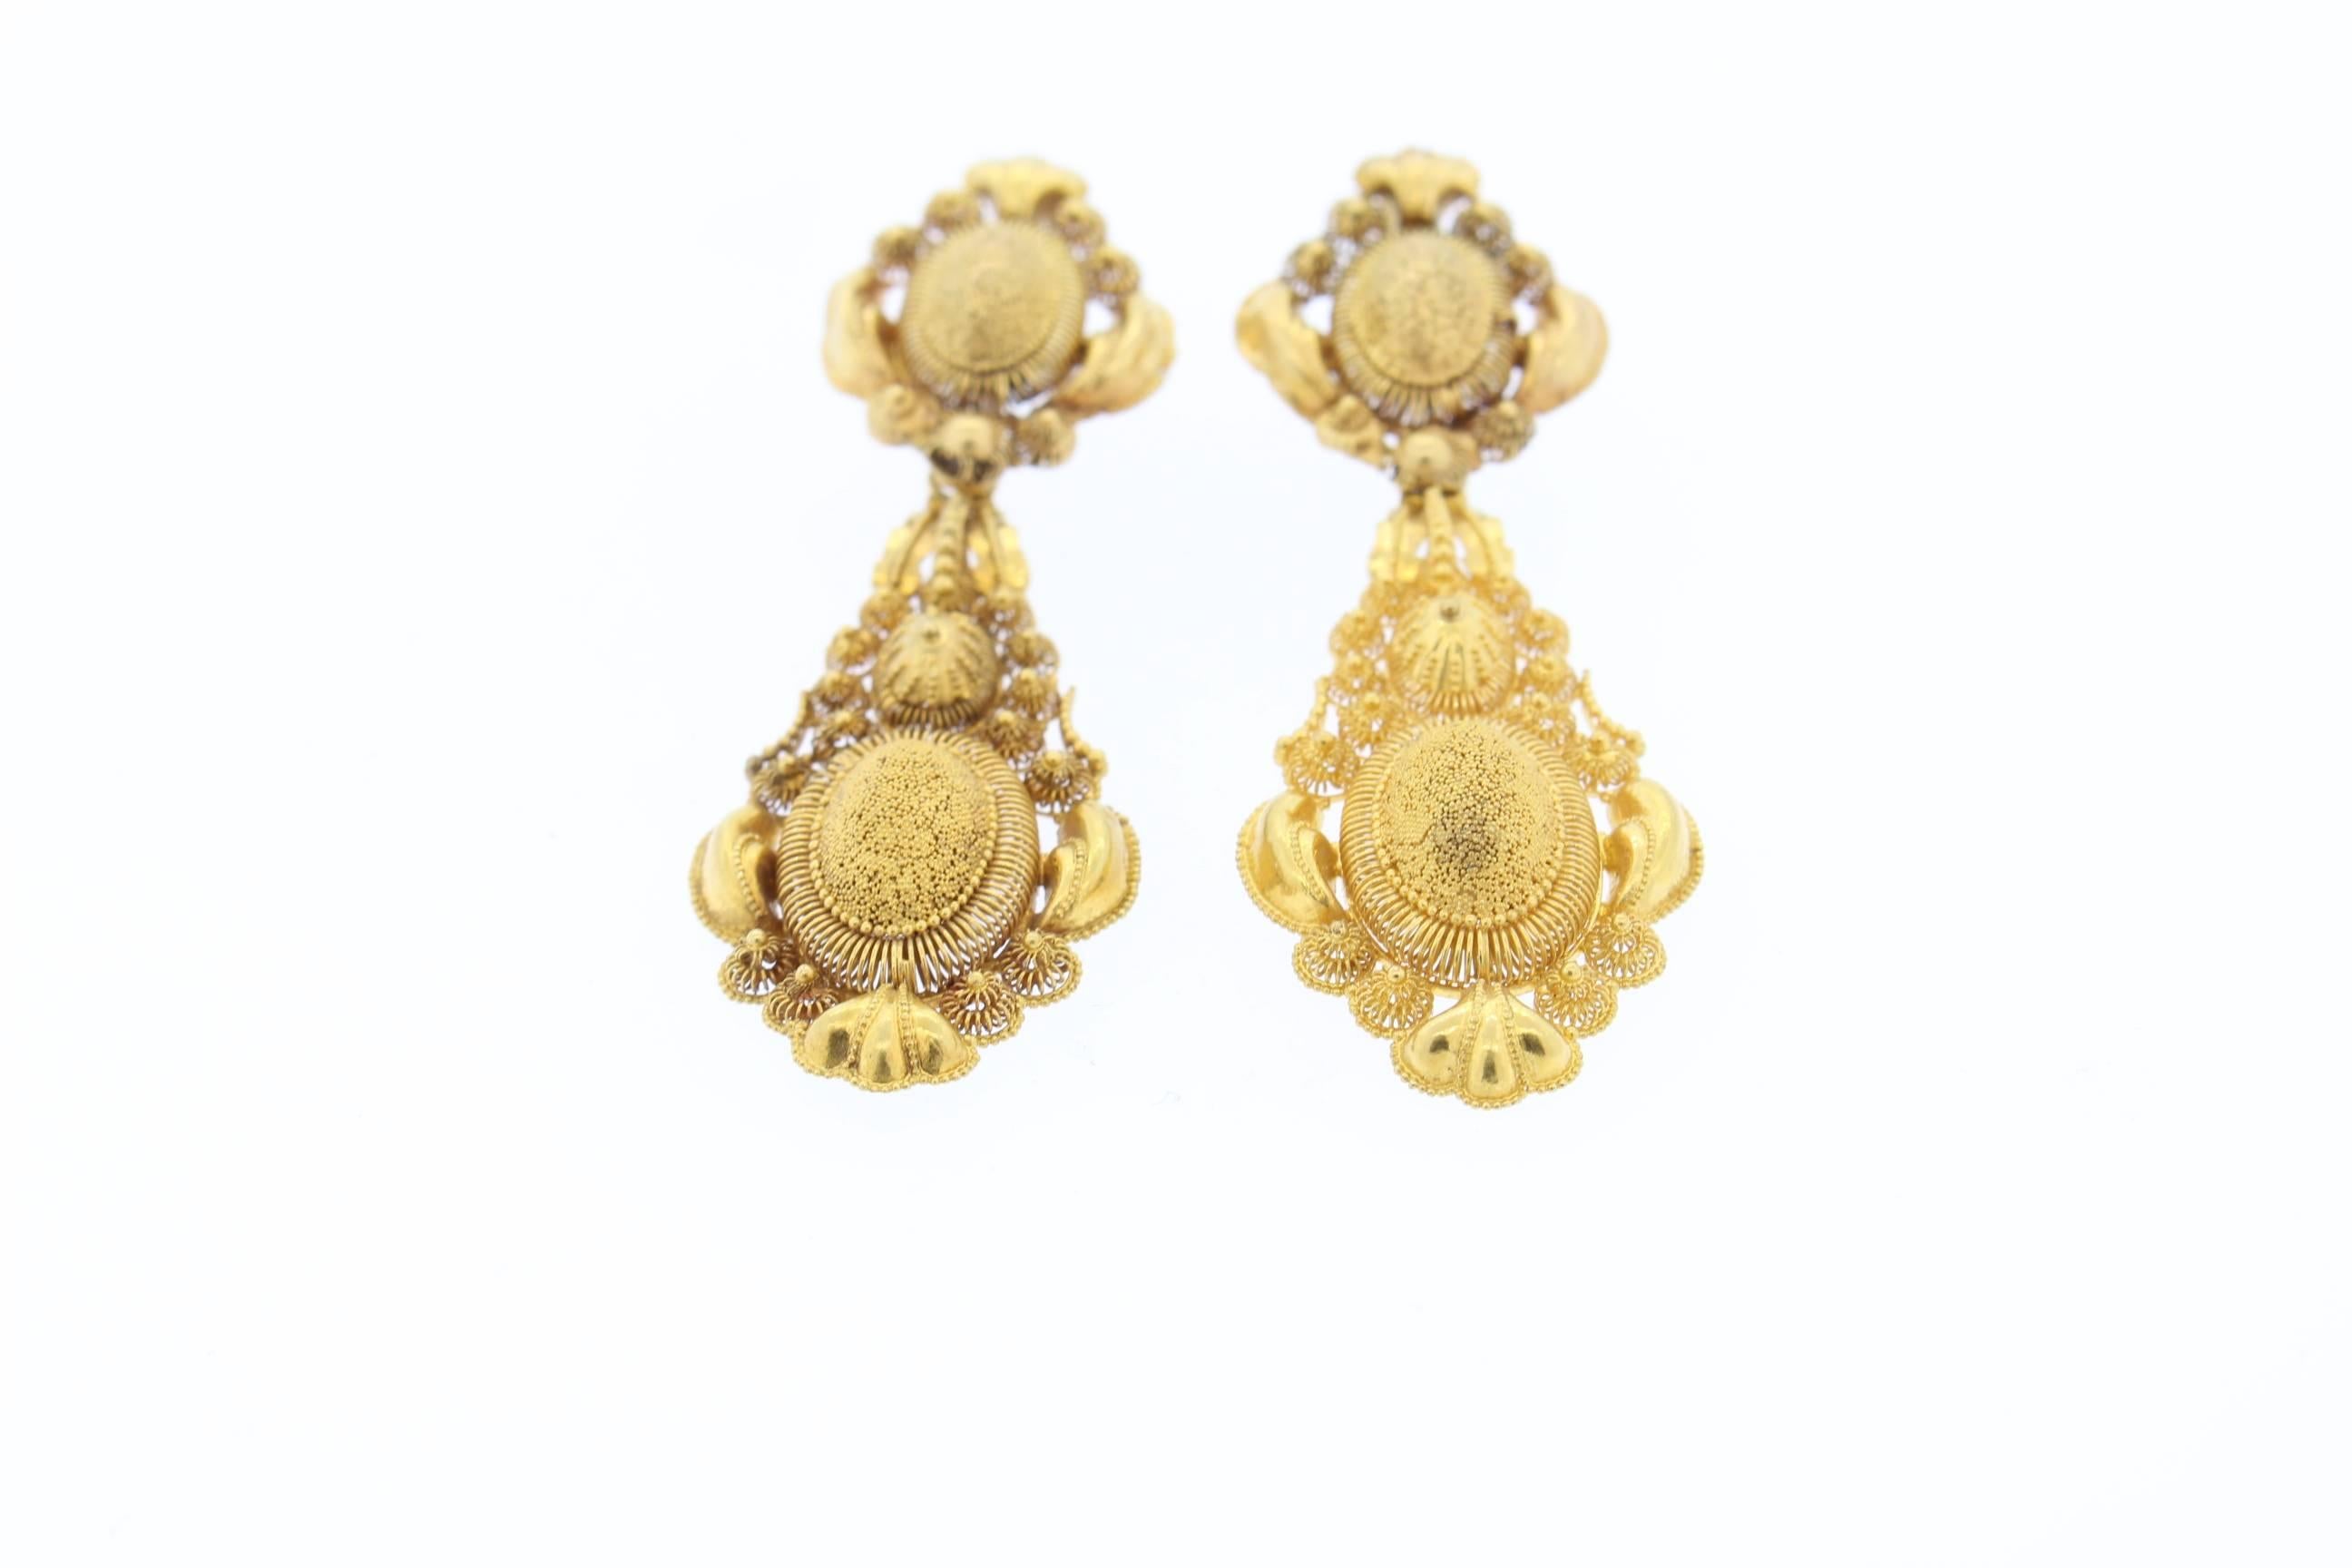 Diese antiken Ohrringe sind leicht und zart, haben aber dennoch Präsenz und Größe, wenn sie getragen werden.  Die Ohrringe sind aus 18-karätigem Gold gefertigt und haben eine exquisite Cannetille-Arbeit aus der Zeit um 1820.  Cannetille-Arbeiten